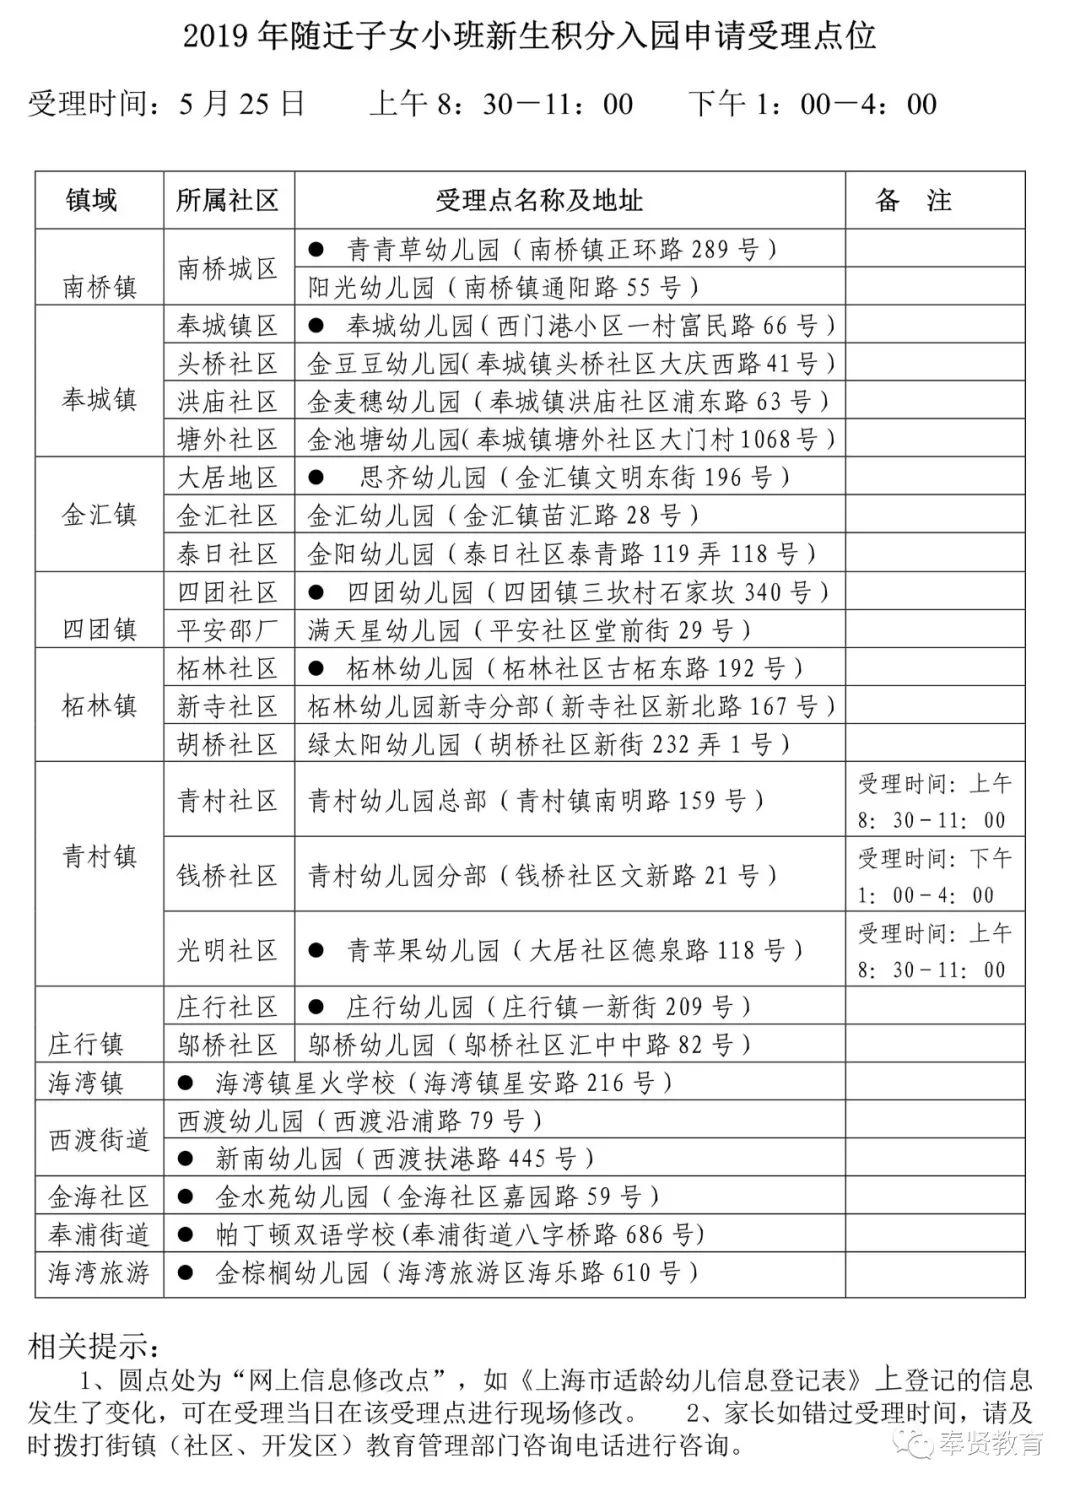 2019学年上海这个区公办幼儿园对来沪人员随迁子女实行积分入园详见